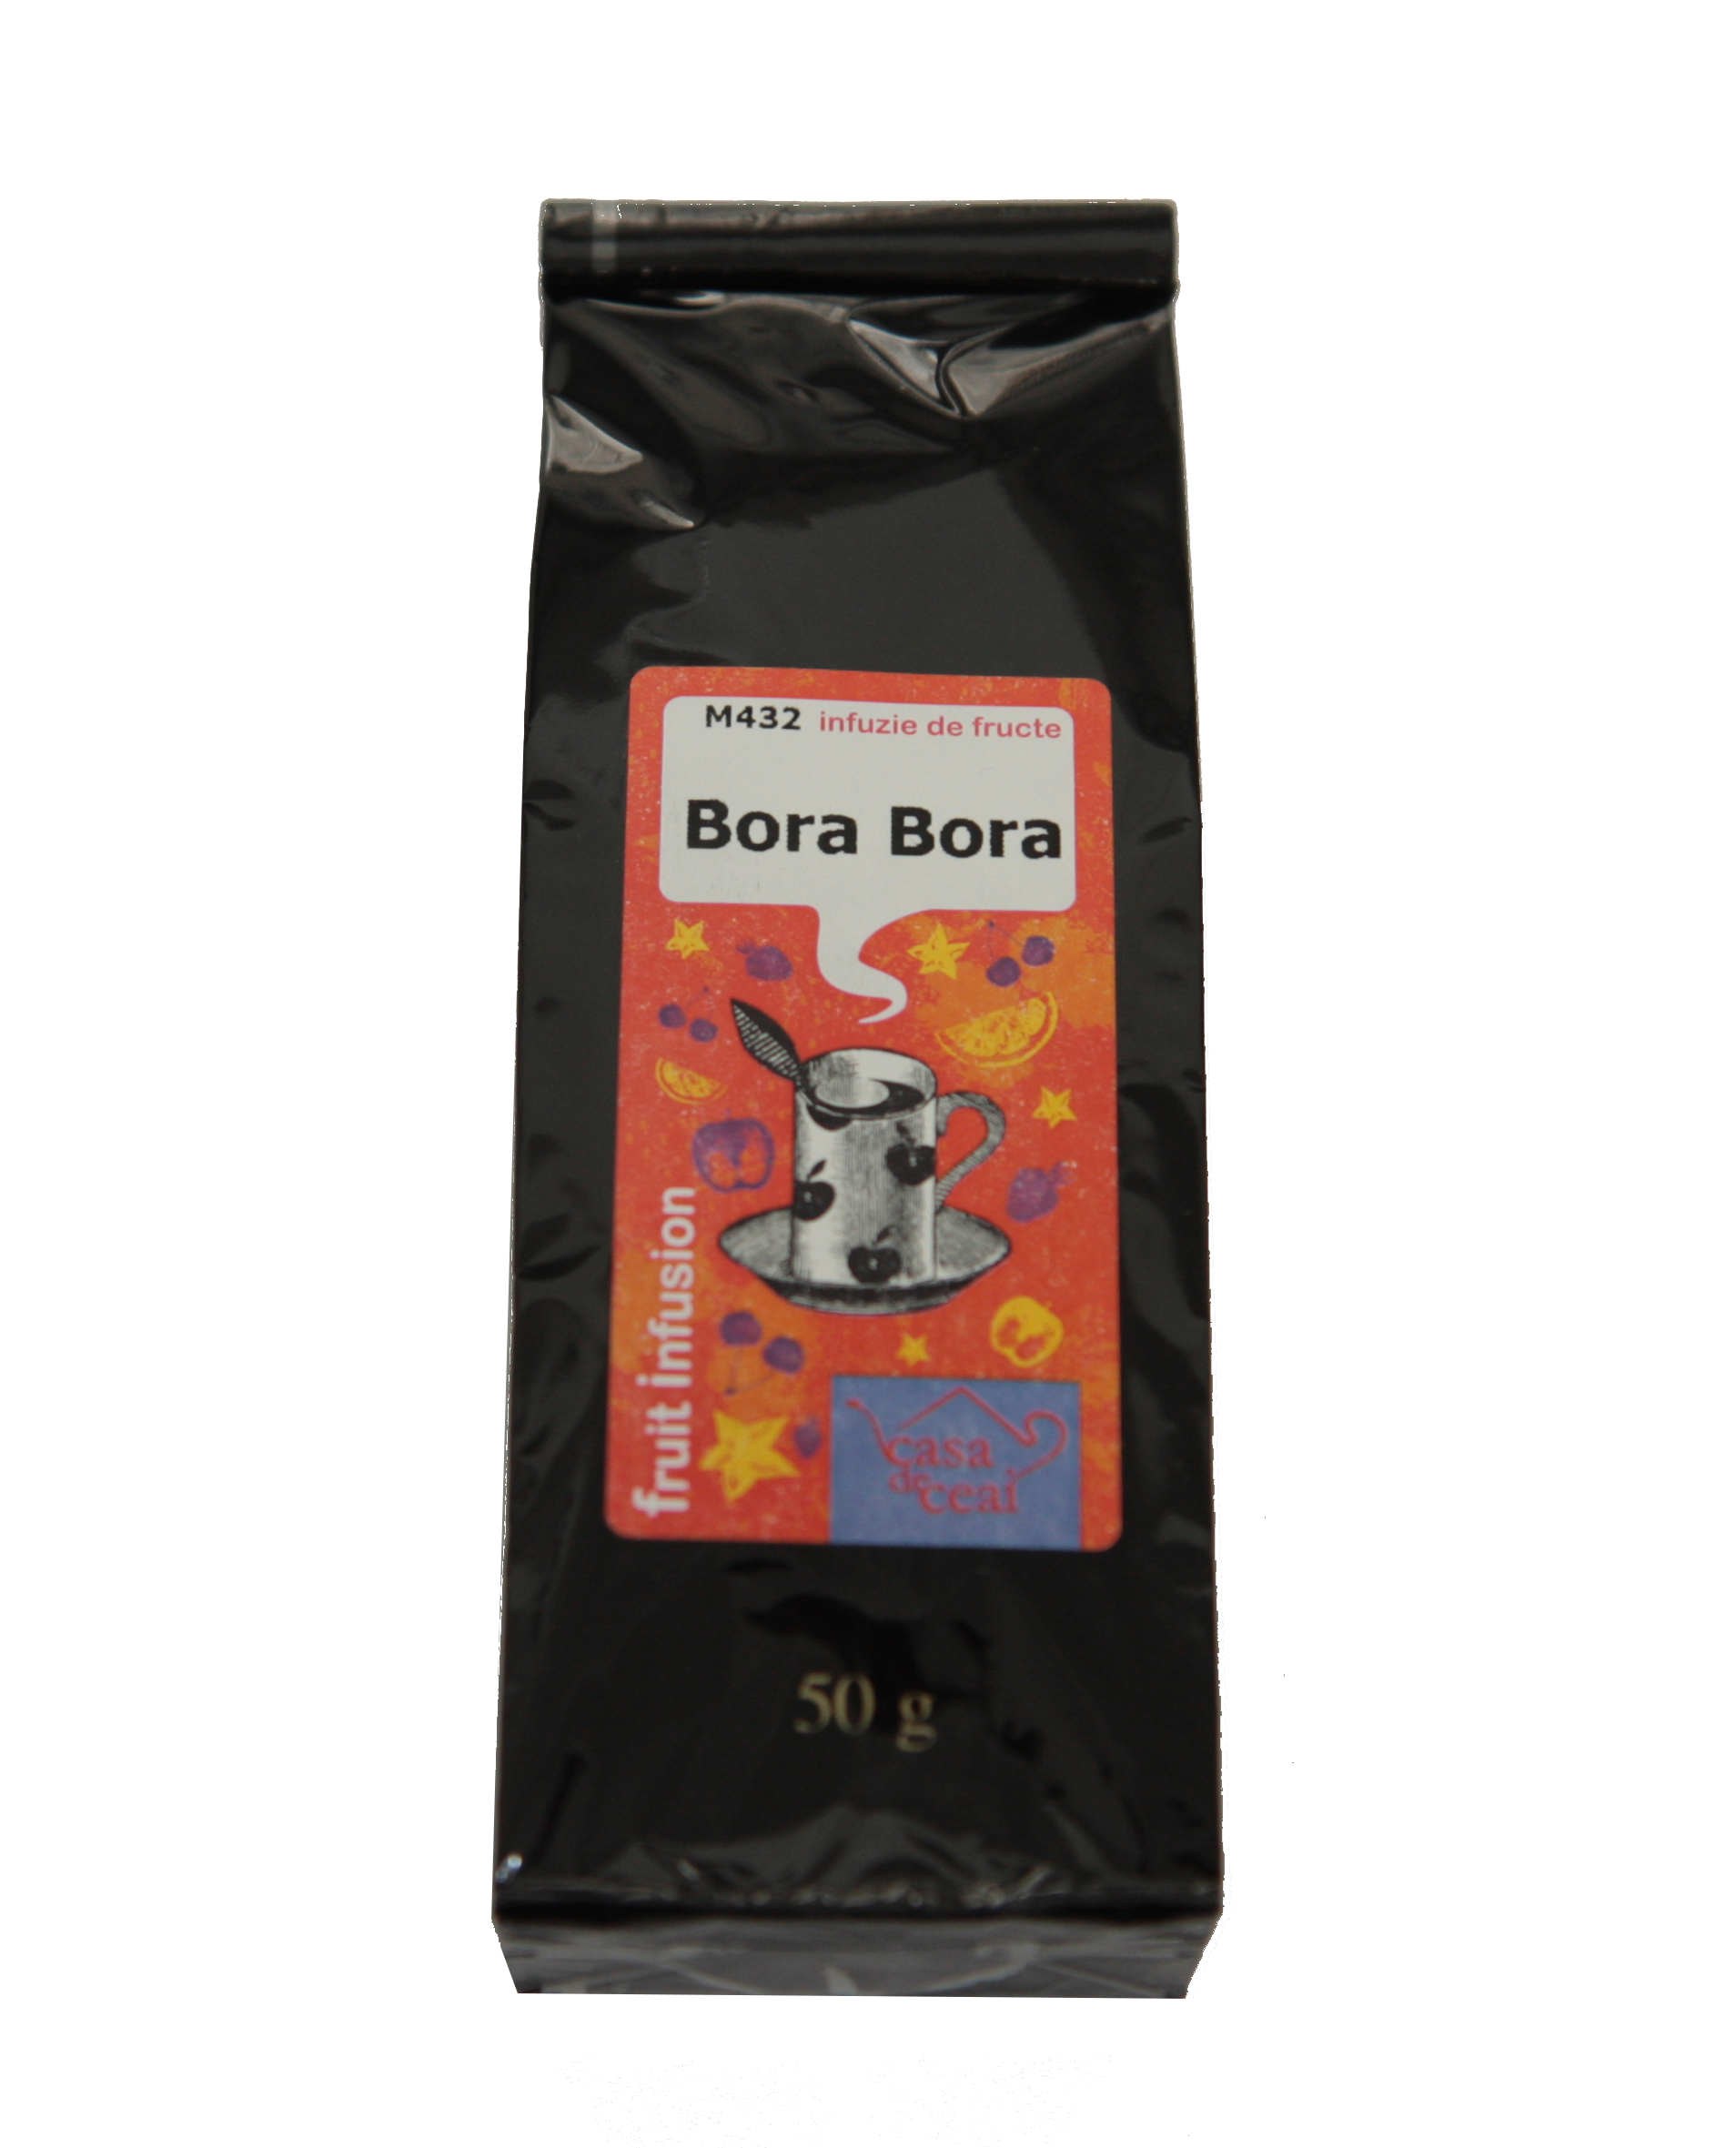 M432 Bora Bora | Casa de ceai